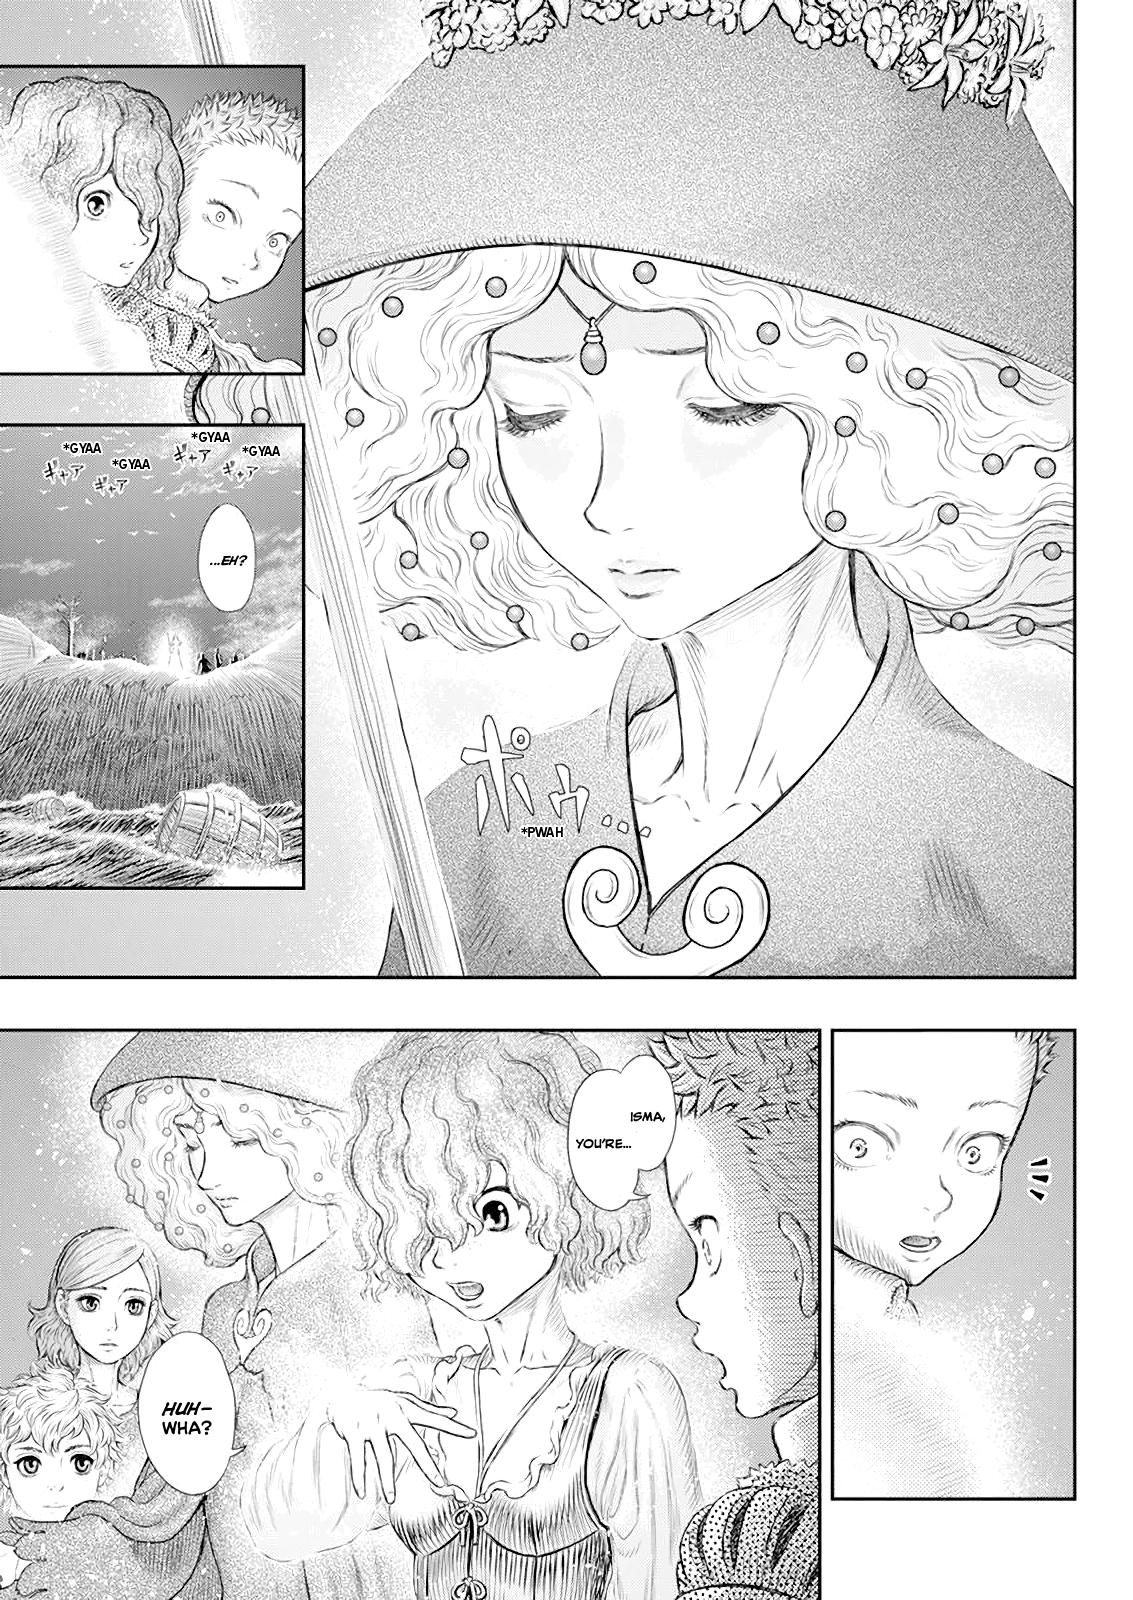 Berserk Manga Chapter 369 image 10